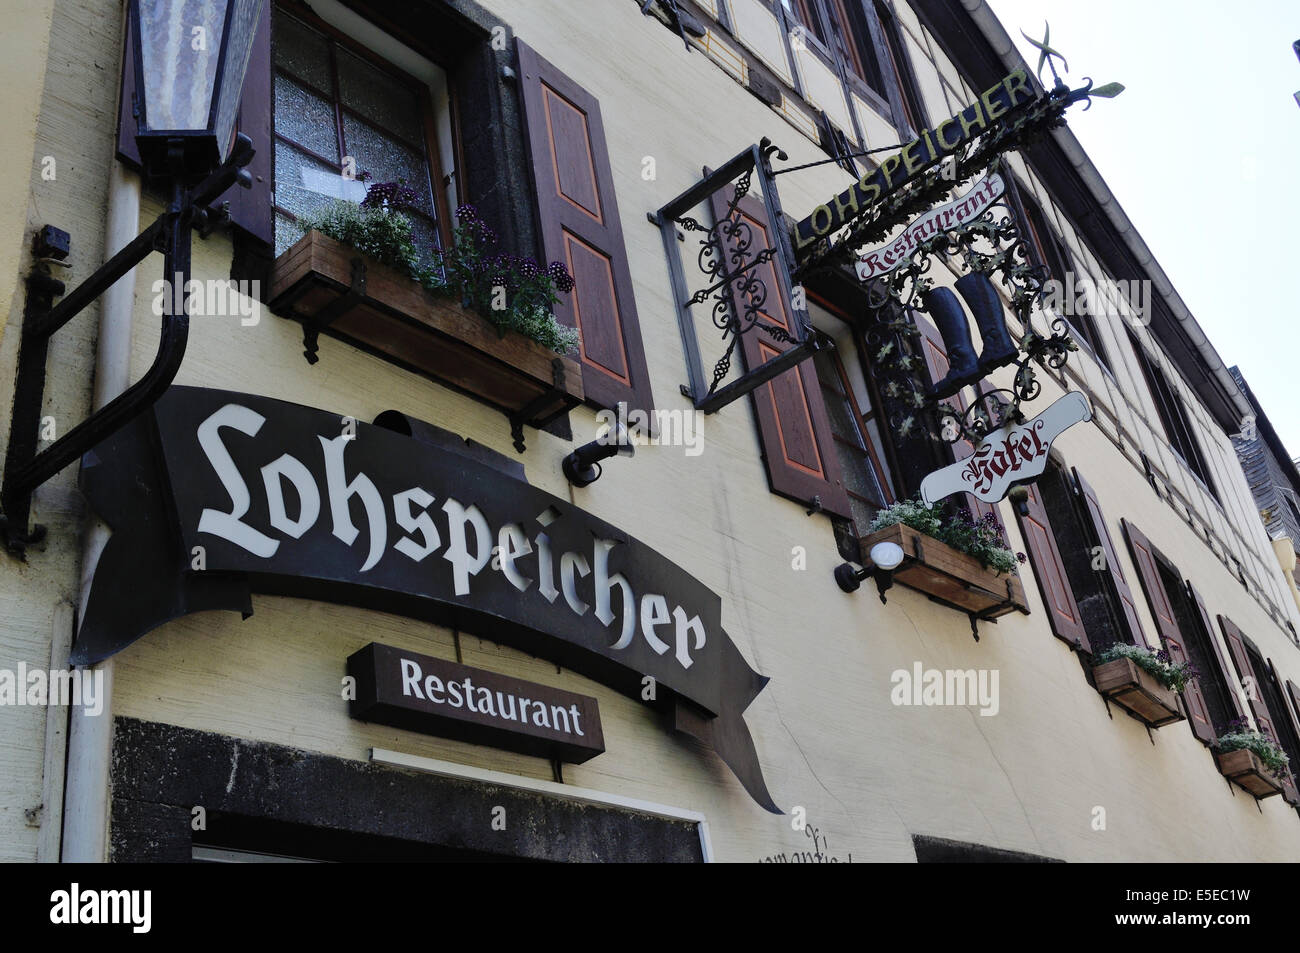 Hôtel Lohspeicher et Restaurant L'Auberge du vin dans la région de Cochem, Allemagne. Banque D'Images